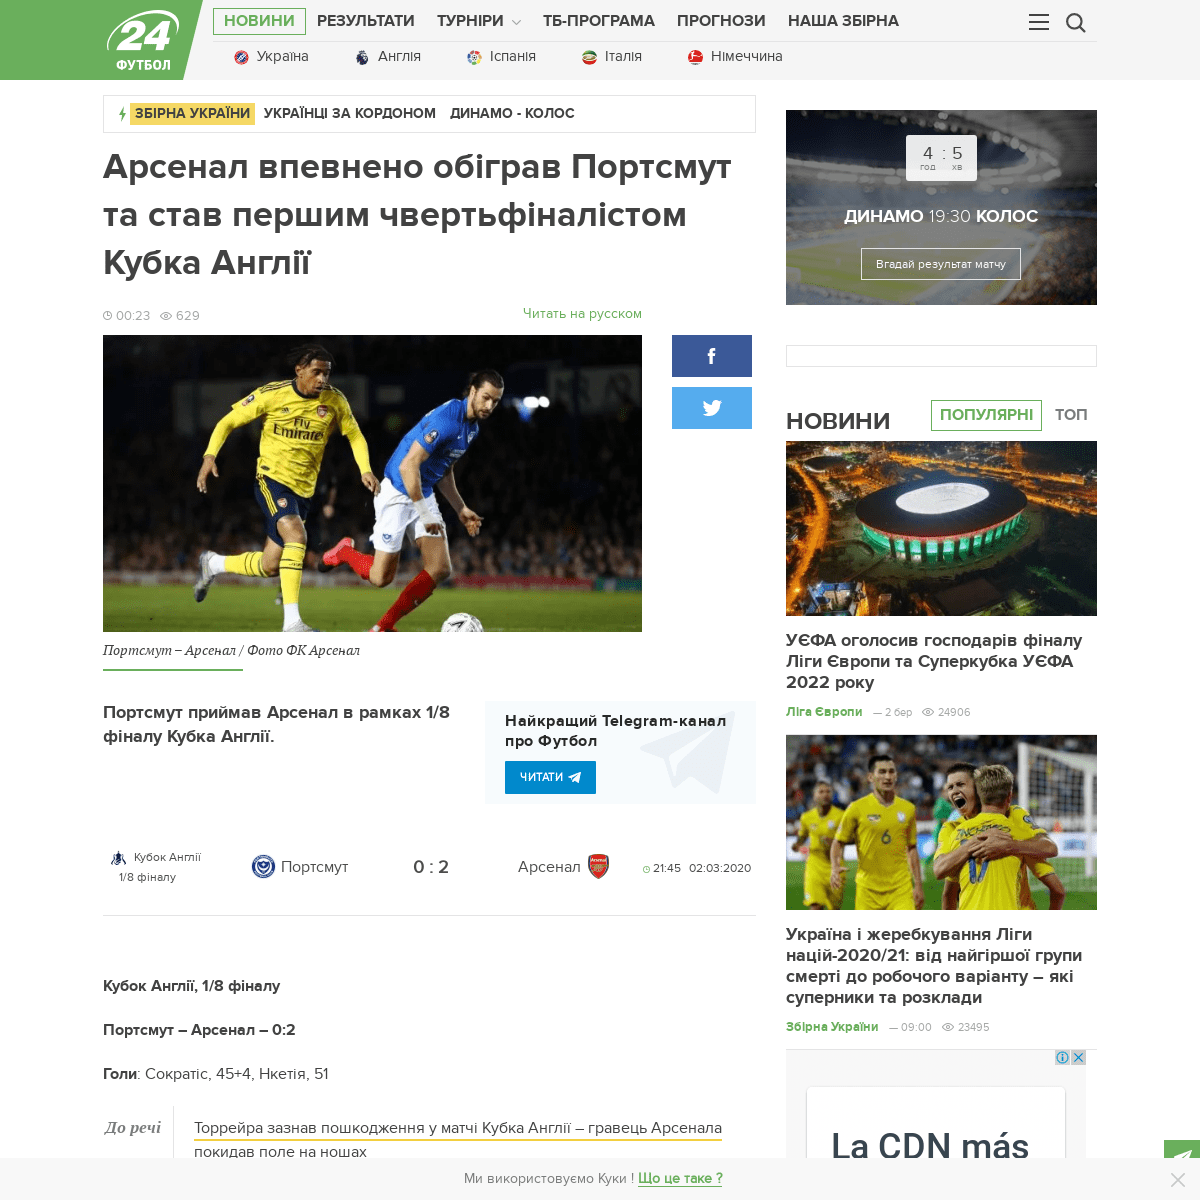 A complete backup of football24.ua/arsenal_vpevneno_obigrav_portsmut_ta_stav_pershim_chvertfinalistom_kubka_angliyi_n589145/